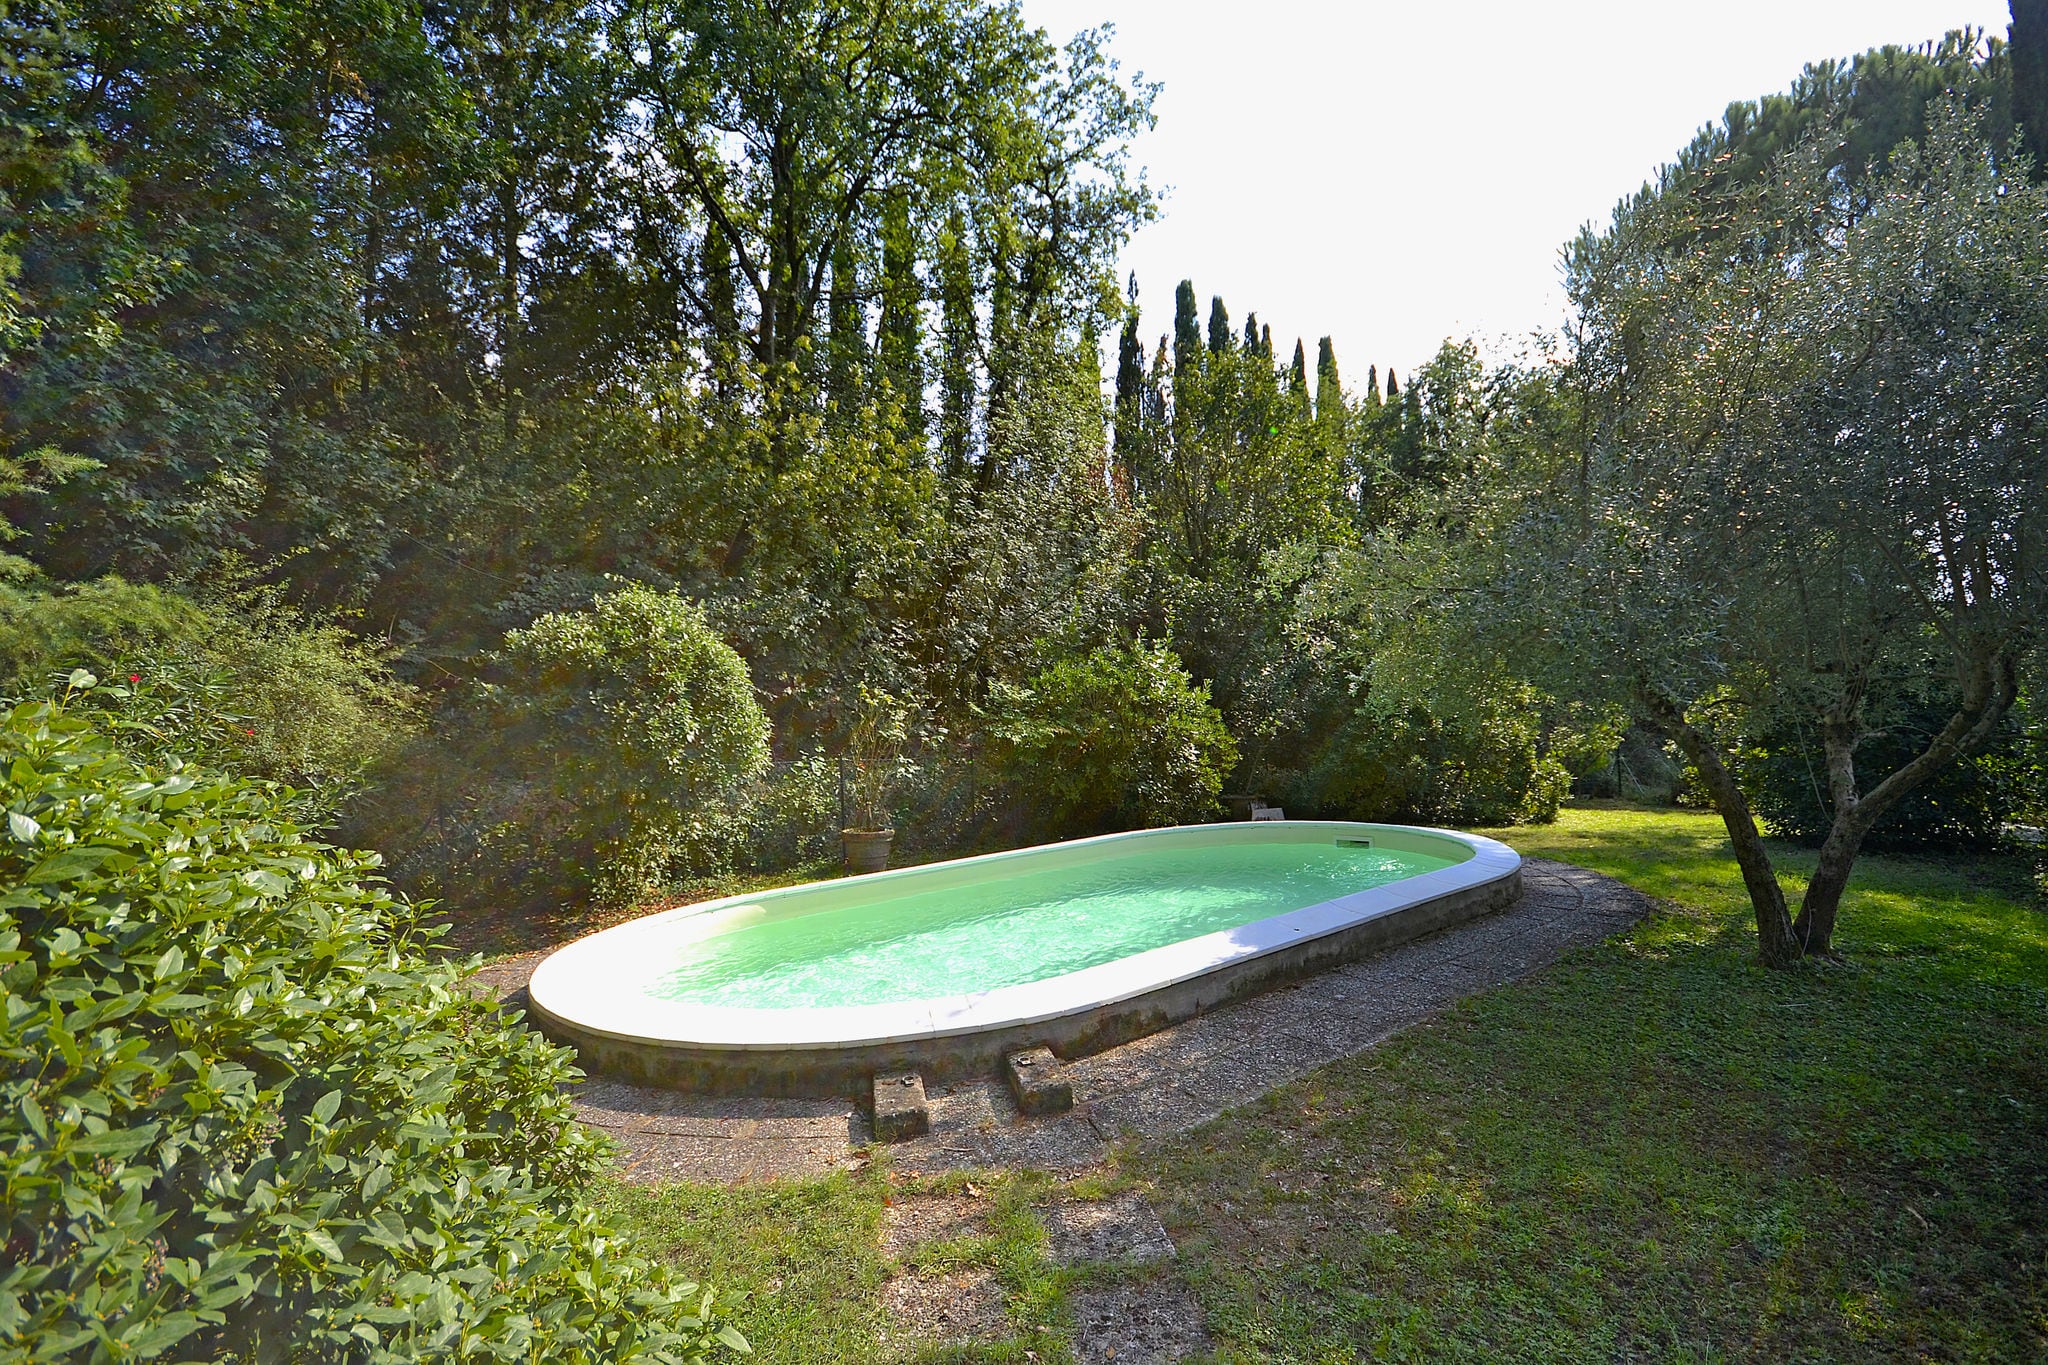 Villa with private swimming pool in the hills near Cortona